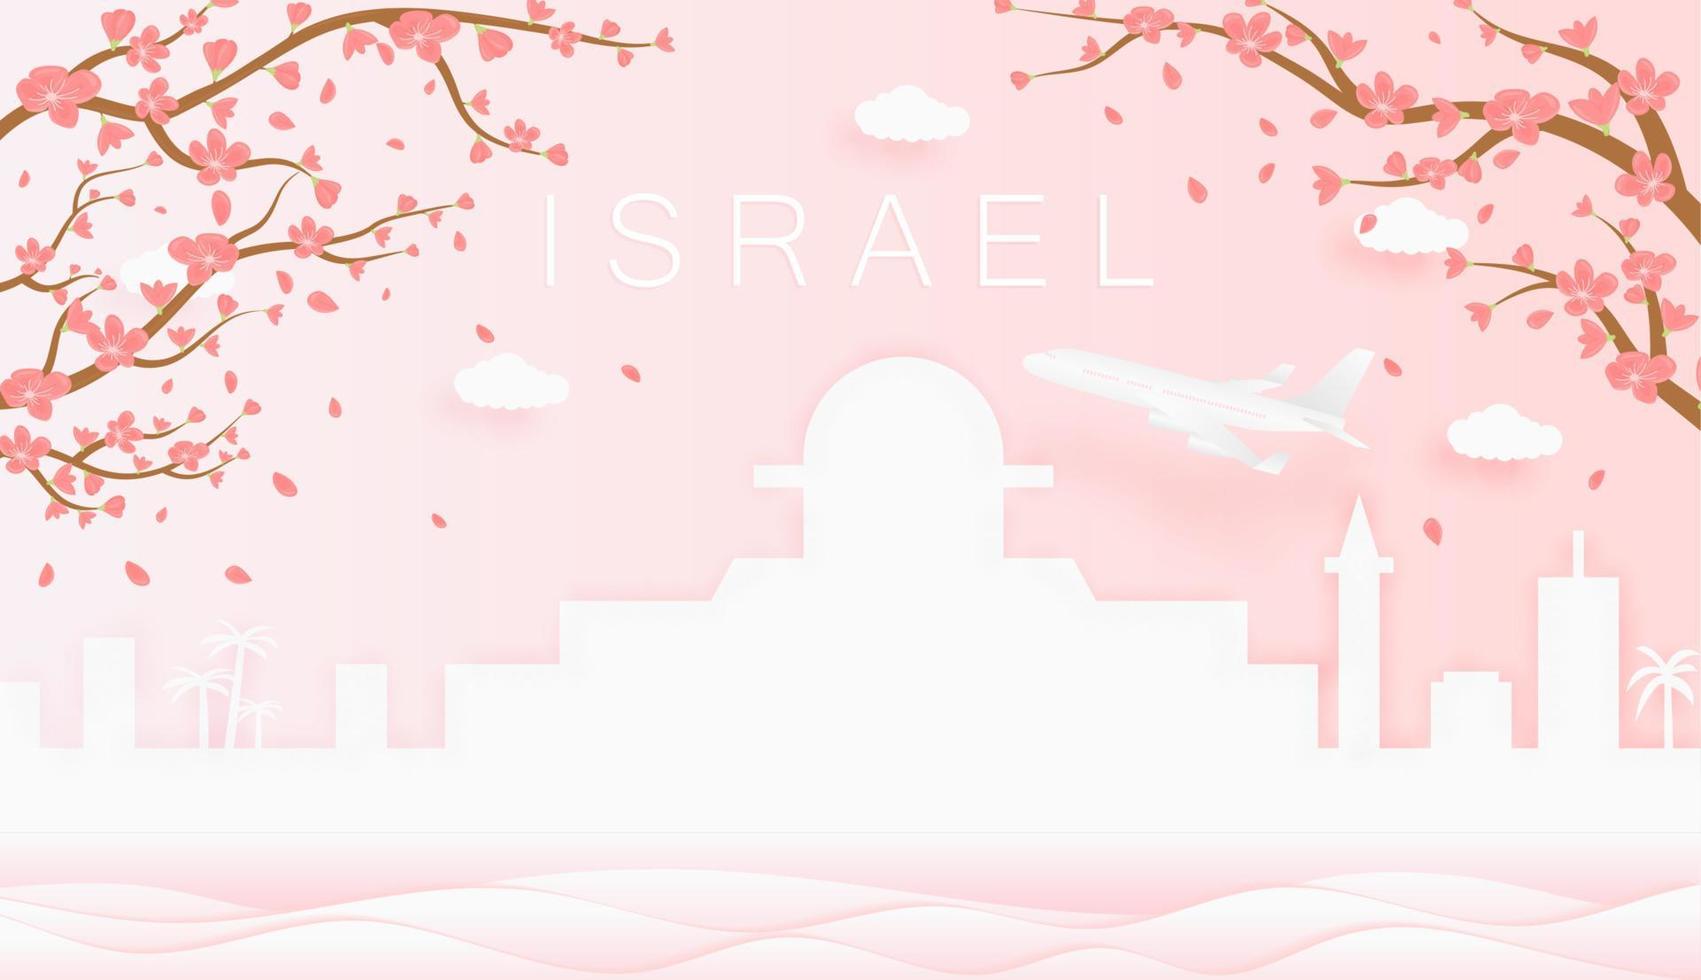 Panorama Reise Postkarte, Poster, Tour Werbung von Welt berühmt Sehenswürdigkeiten von Israel, Frühling Jahreszeit mit Blühen Blumen im Baum vektor